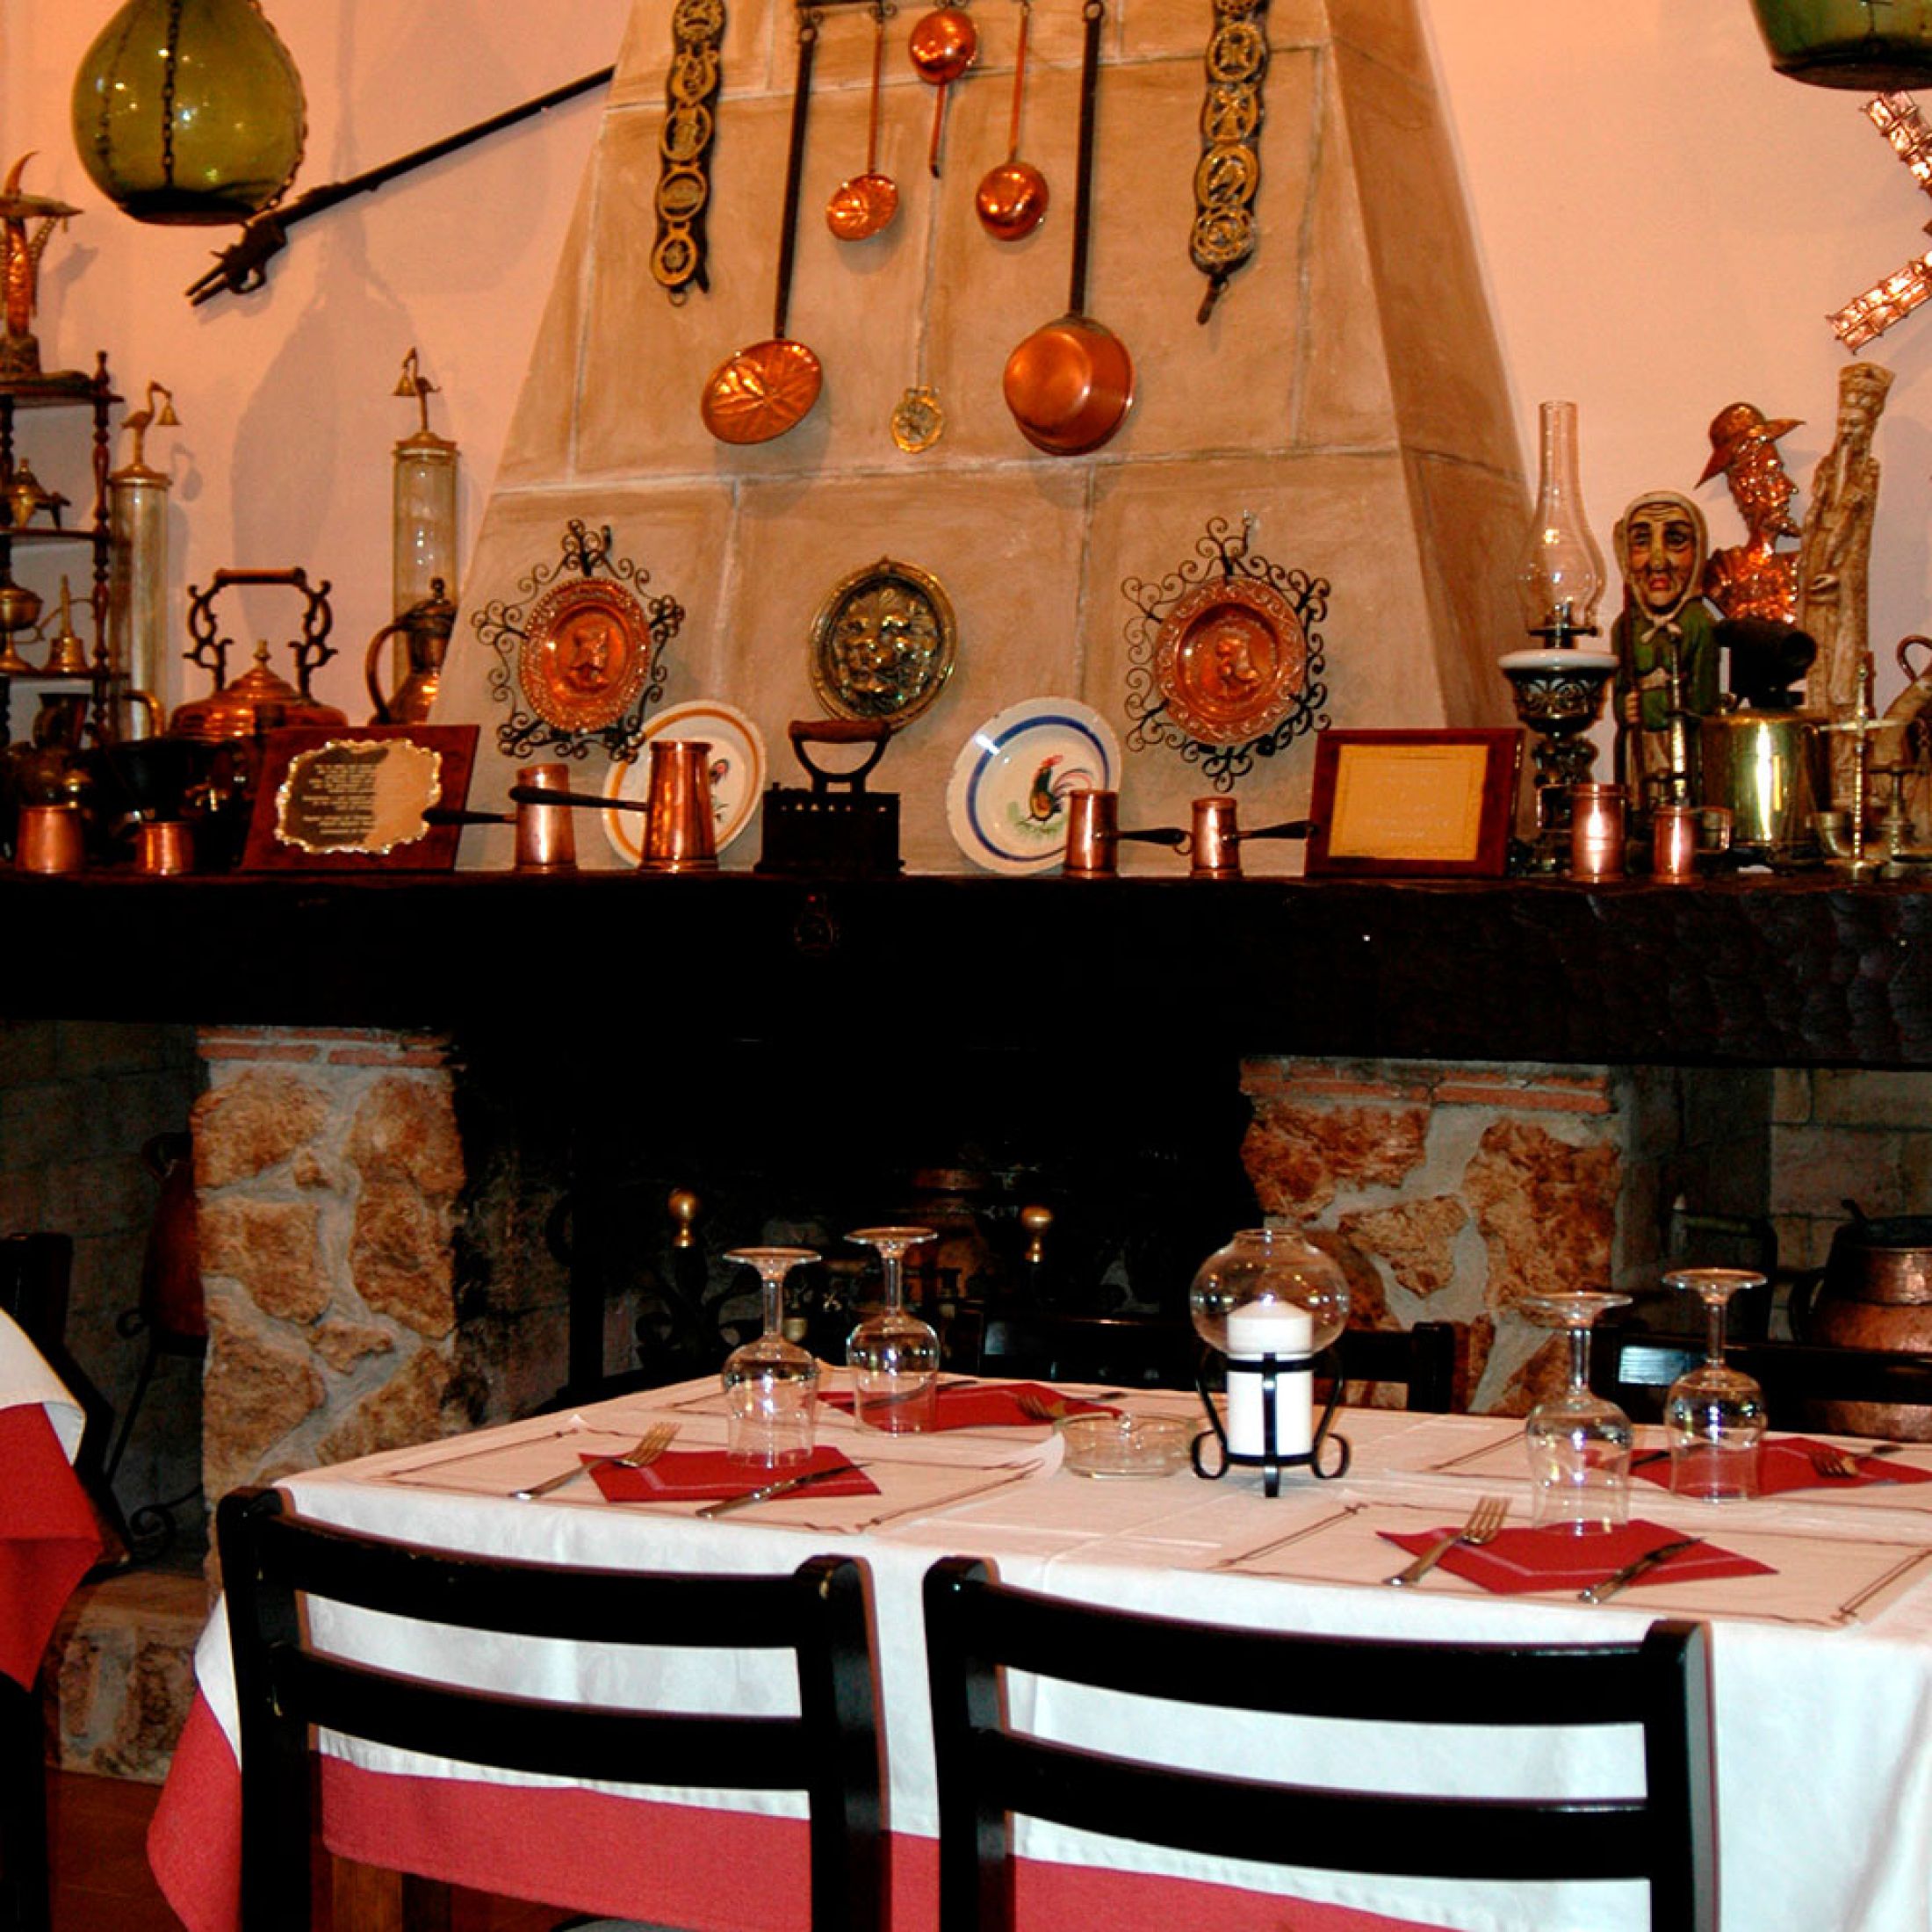 La Parra Celler Restaurant